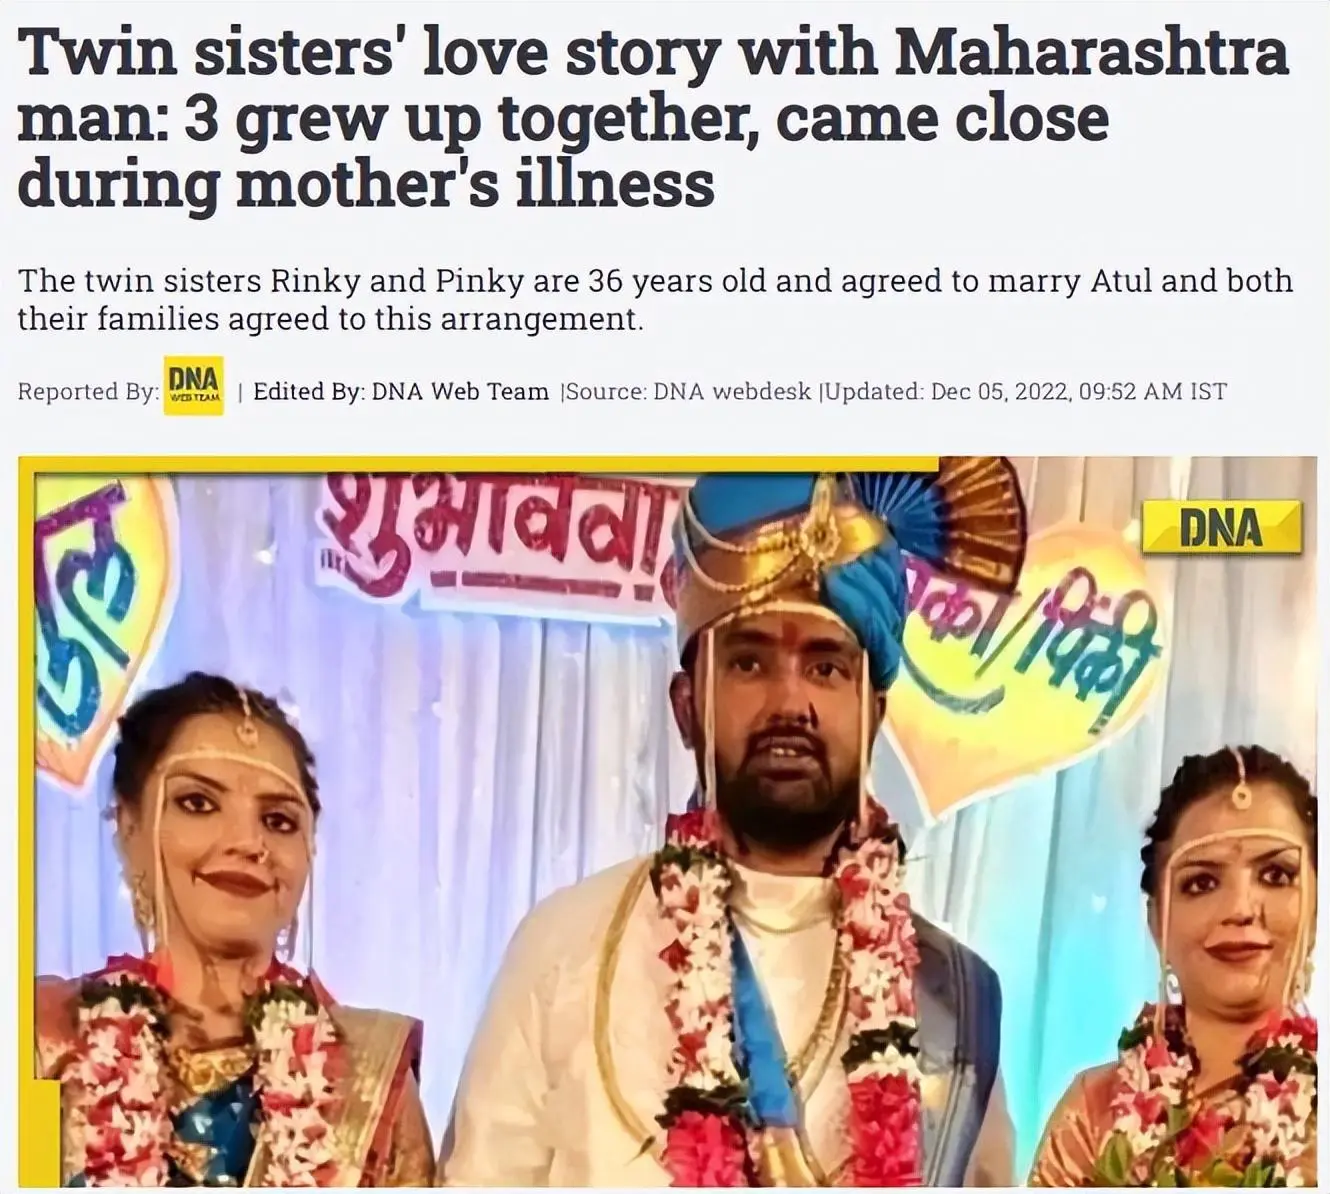 长相一样的印度双胞胎姐妹嫁给同一位丈夫